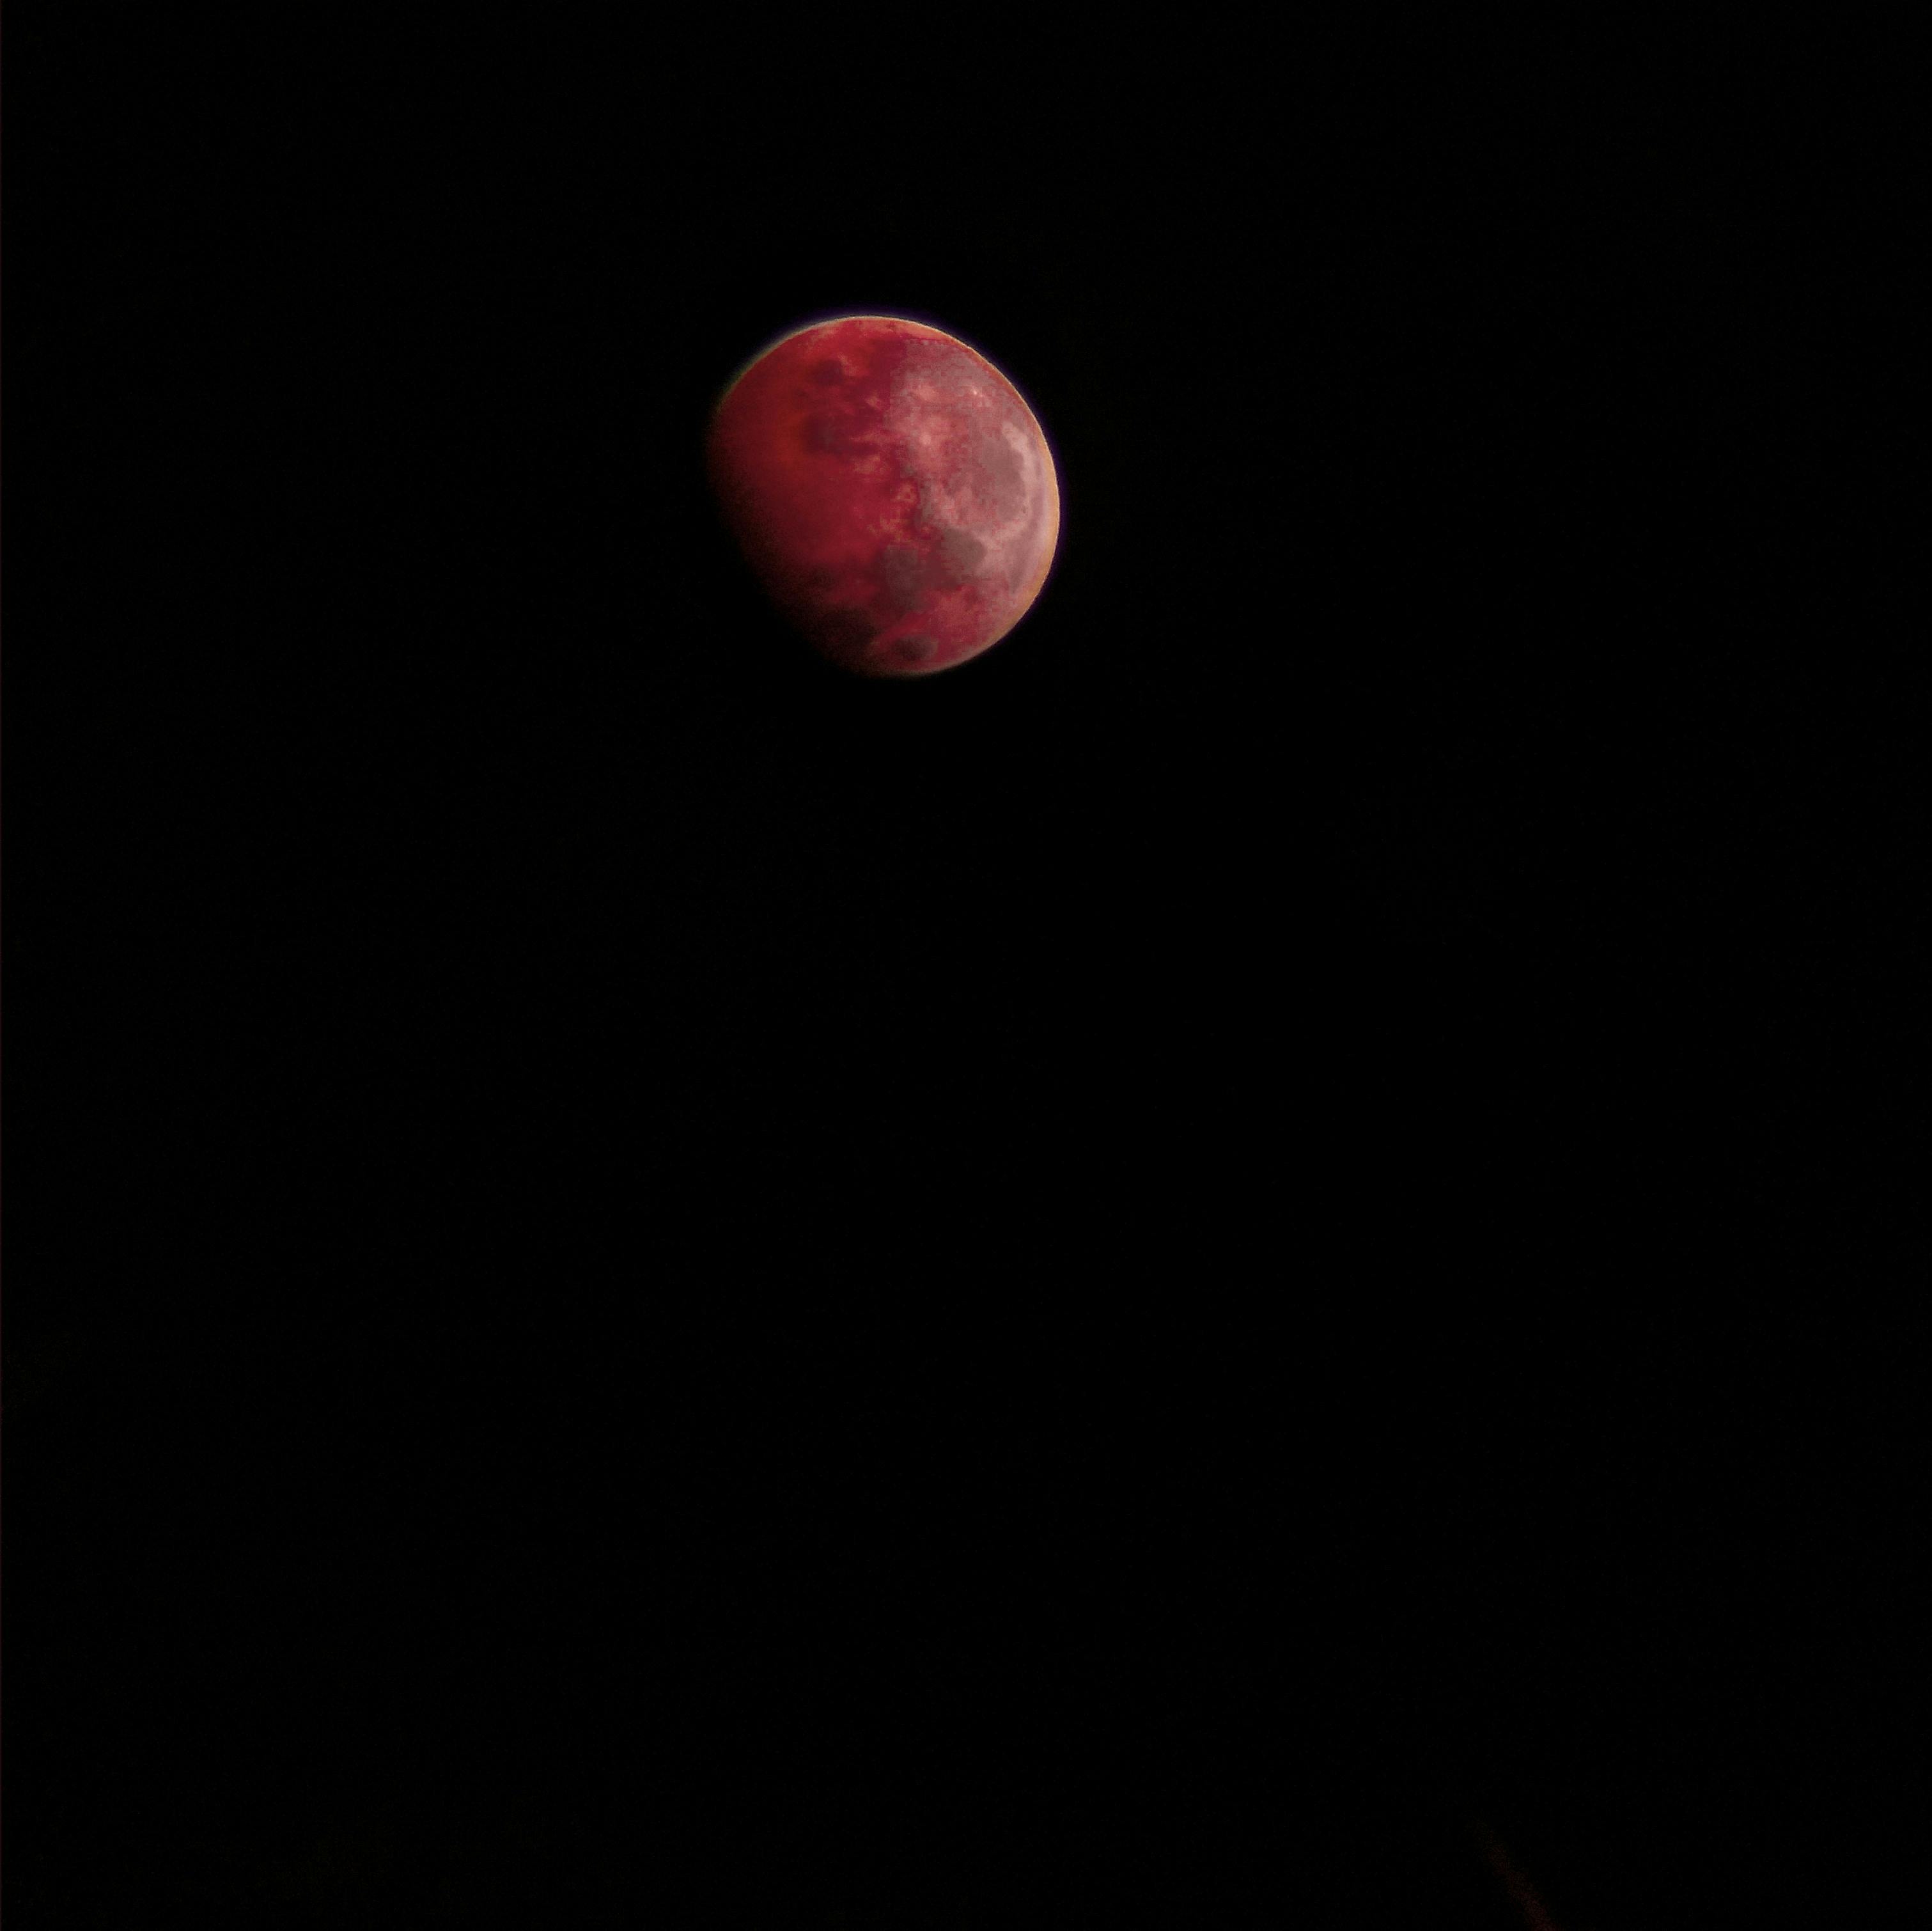 Free stock photo of #mobilechallenge, blood moon, moon